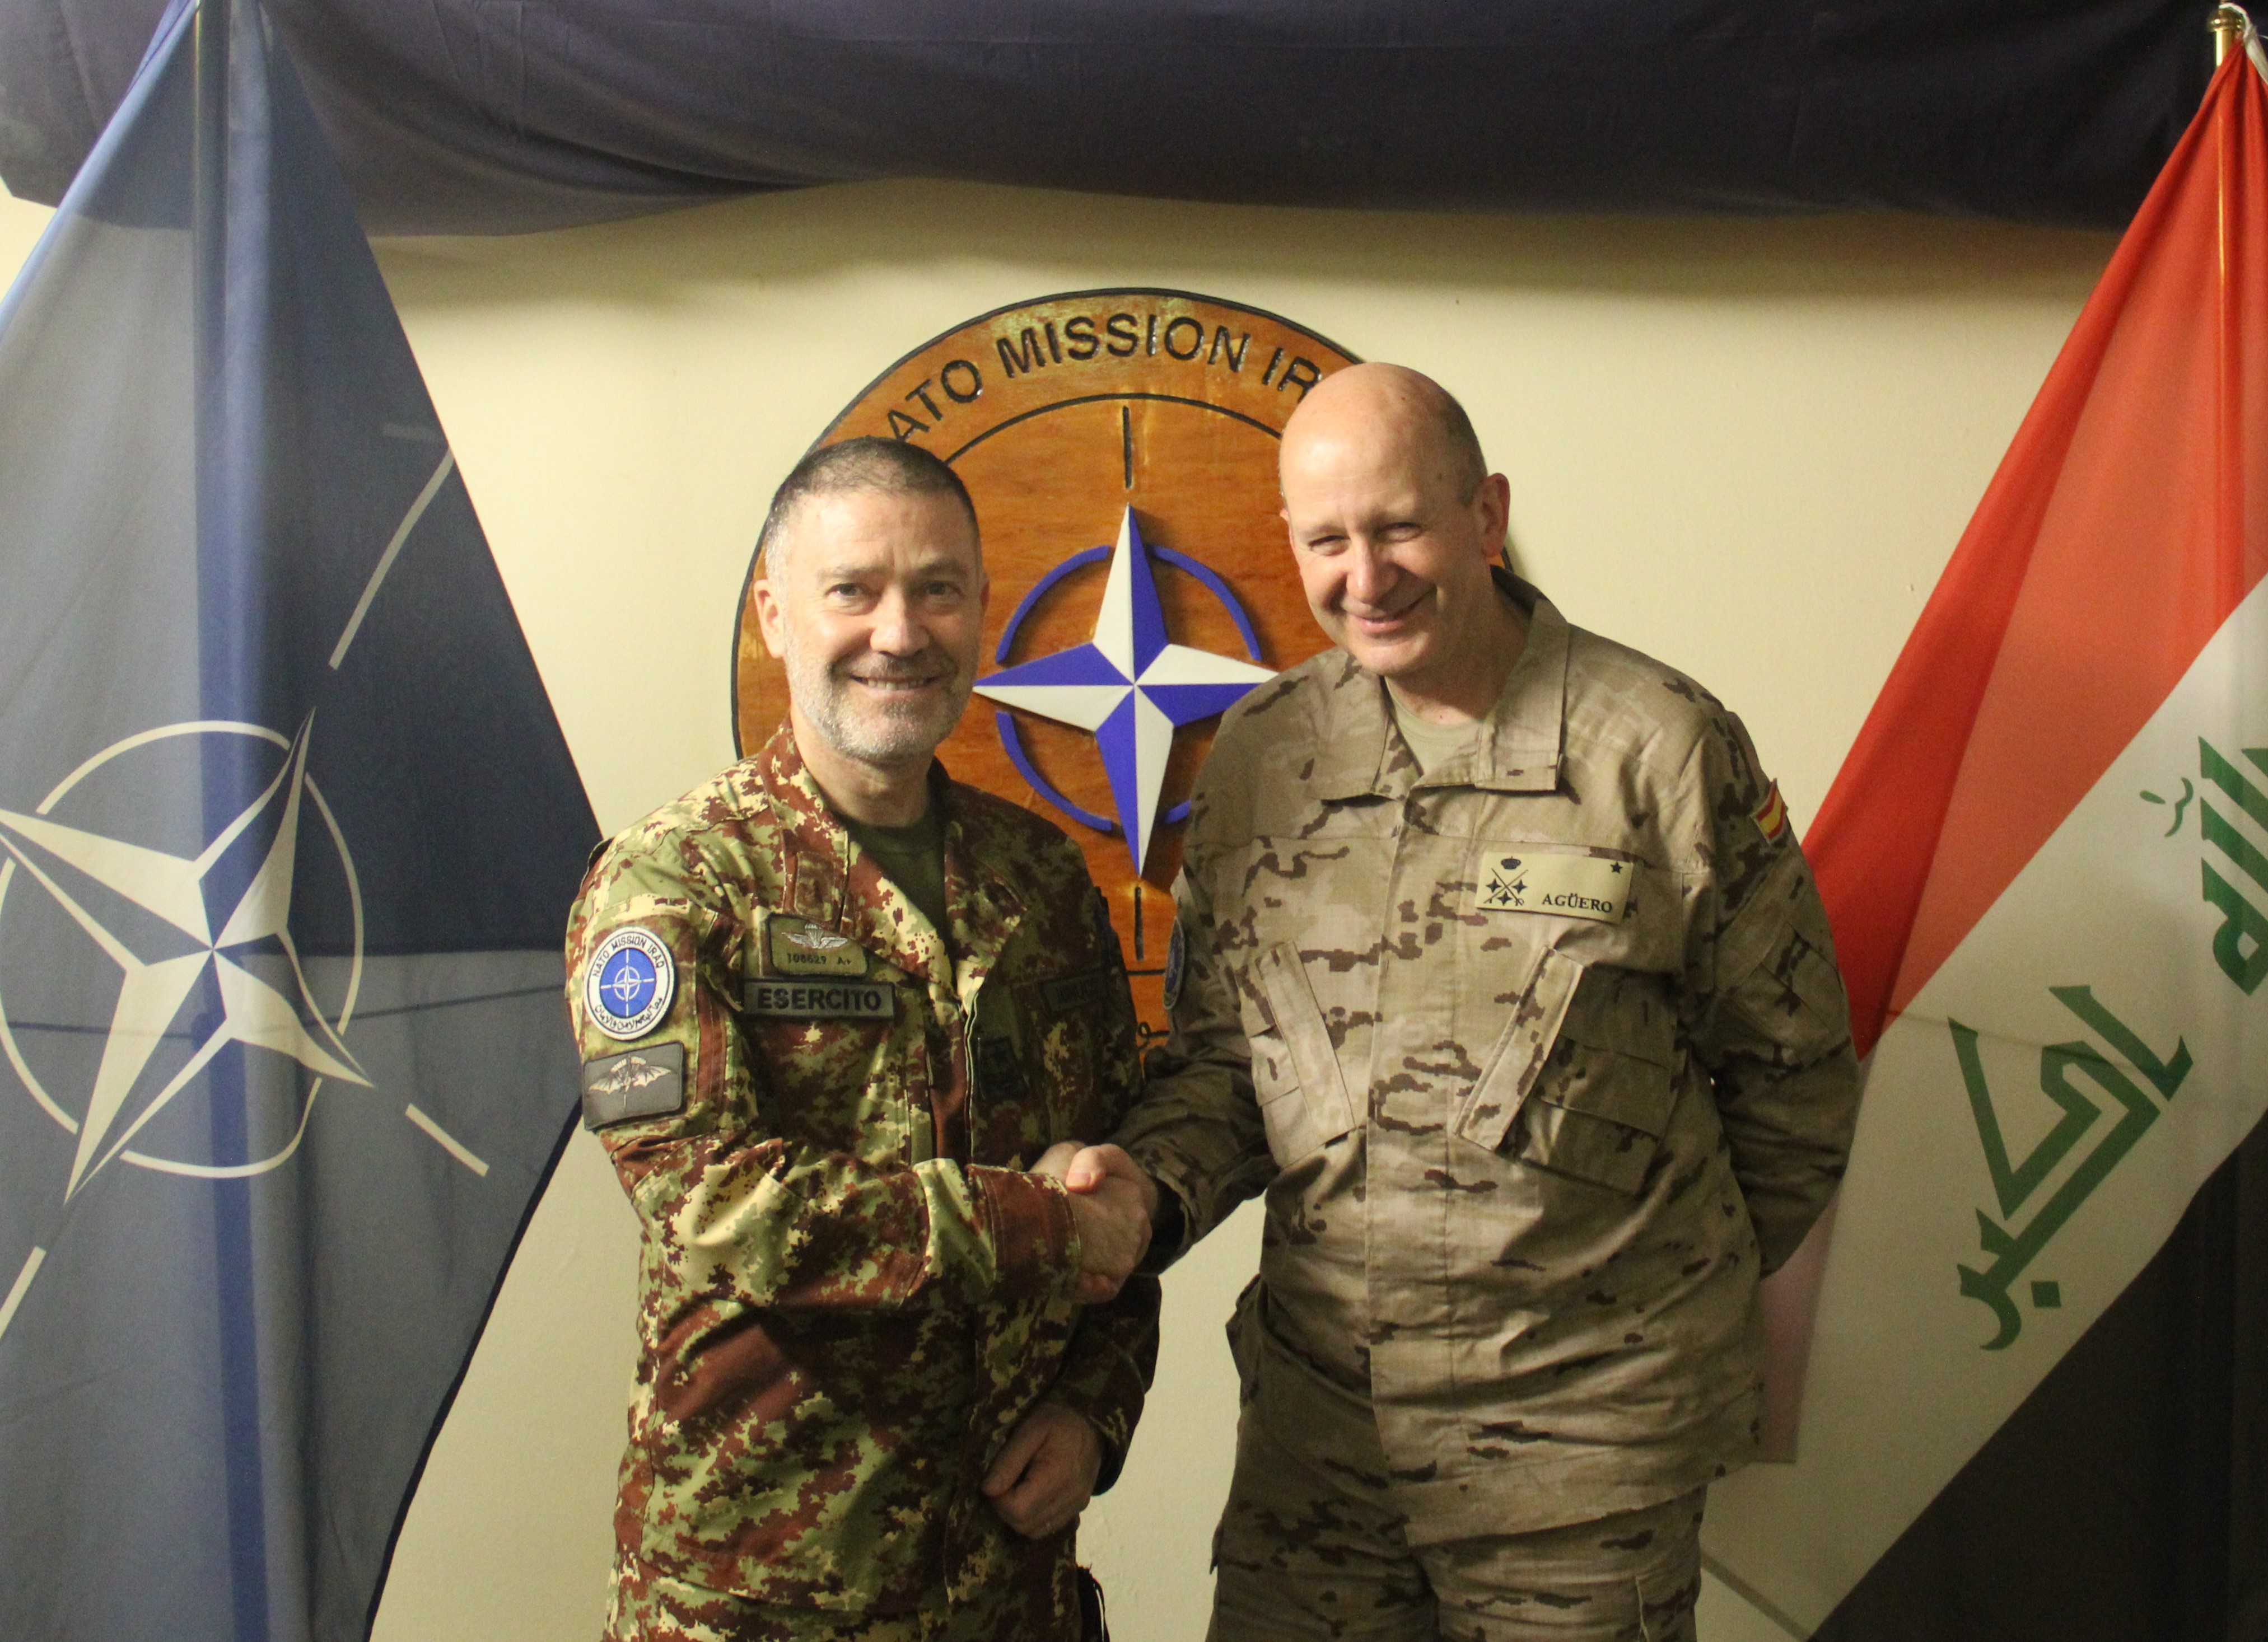 Saludo con el Jefe de la NATO Mission IRAK